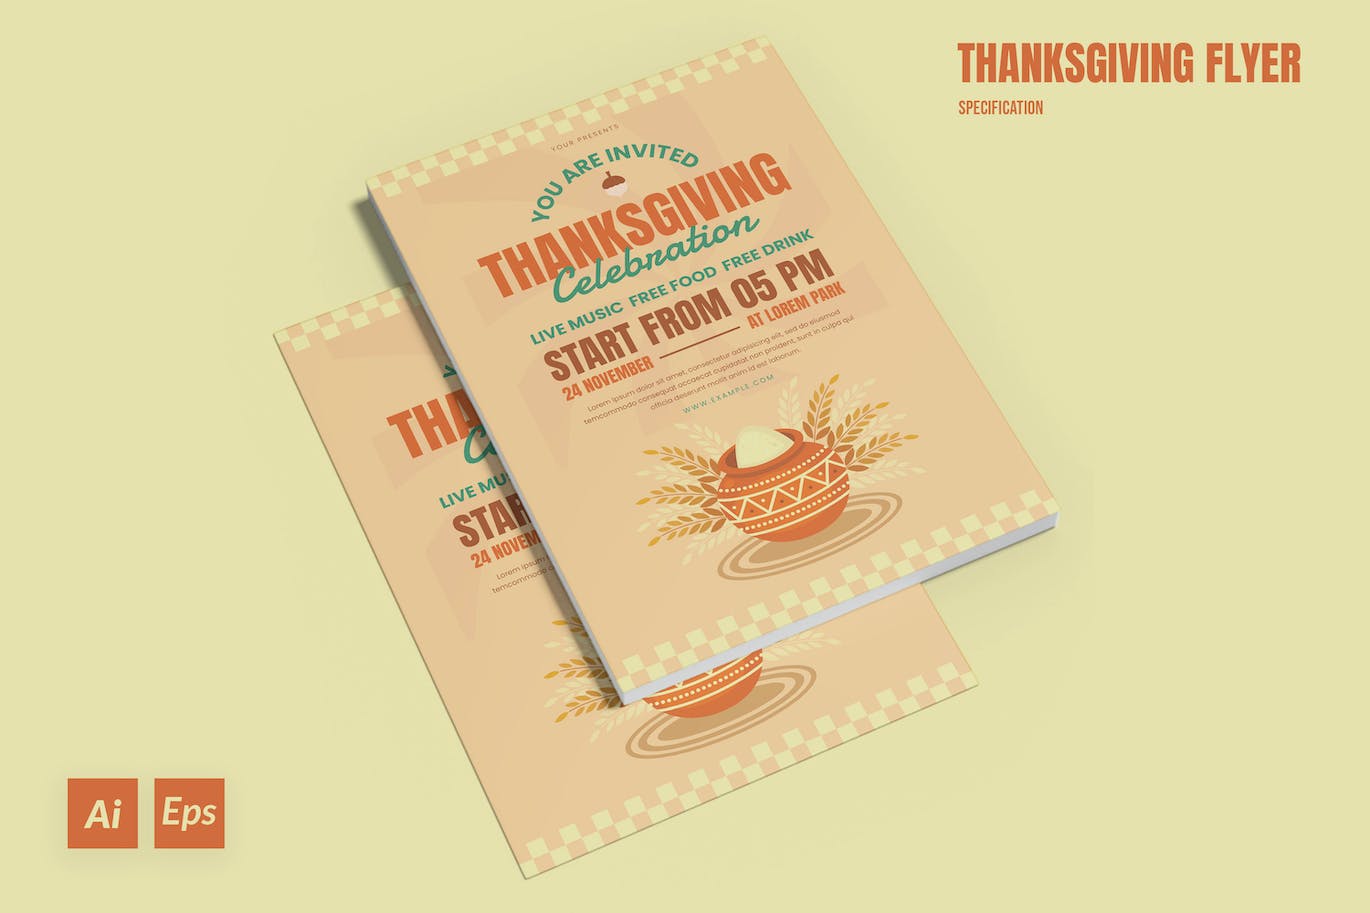 感恩节海报传单设计模板 Thanksgiving Flyer Template 设计素材 第3张